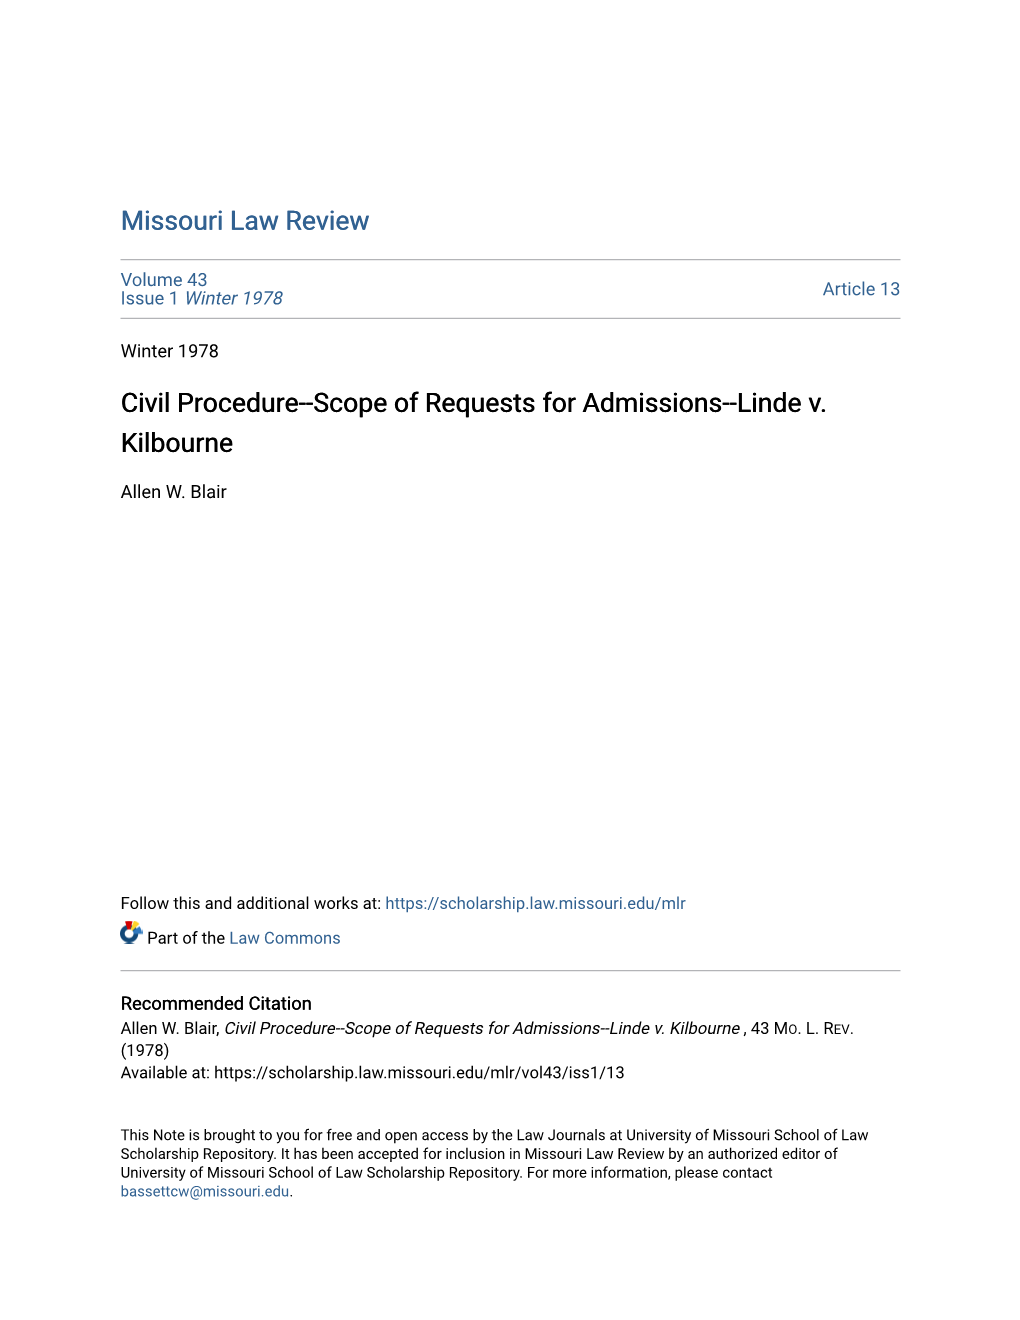 Civil Procedure--Scope of Requests for Admissions--Linde V. Kilbourne